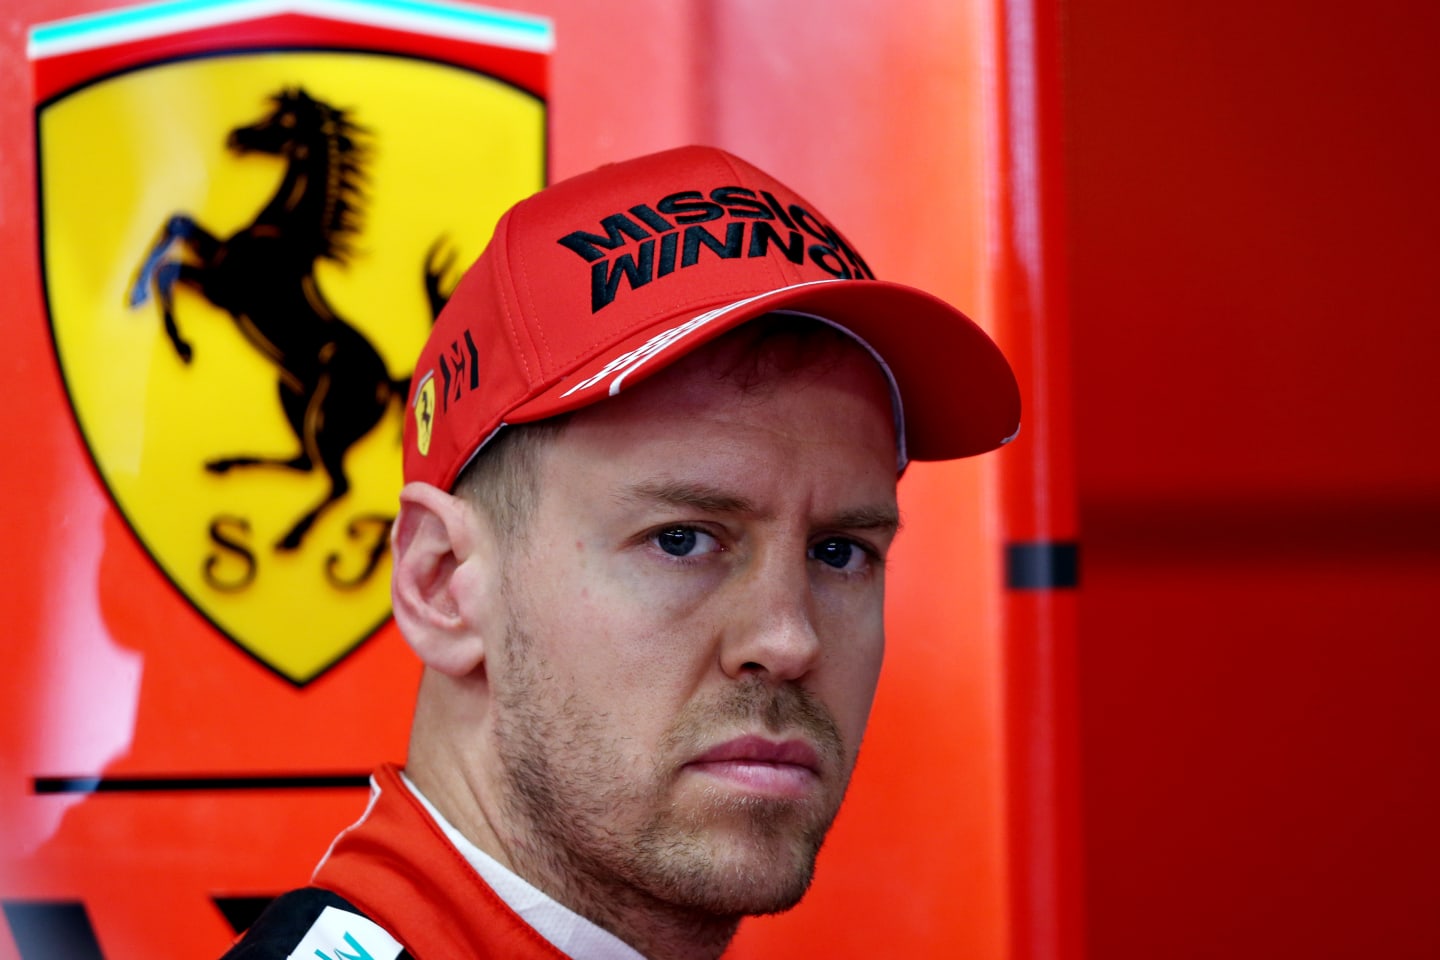 BARCELONA, SPAIN - FEBRUARY 21: Sebastian Vettel of Germany driving the (5) Scuderia Ferrari SF1000